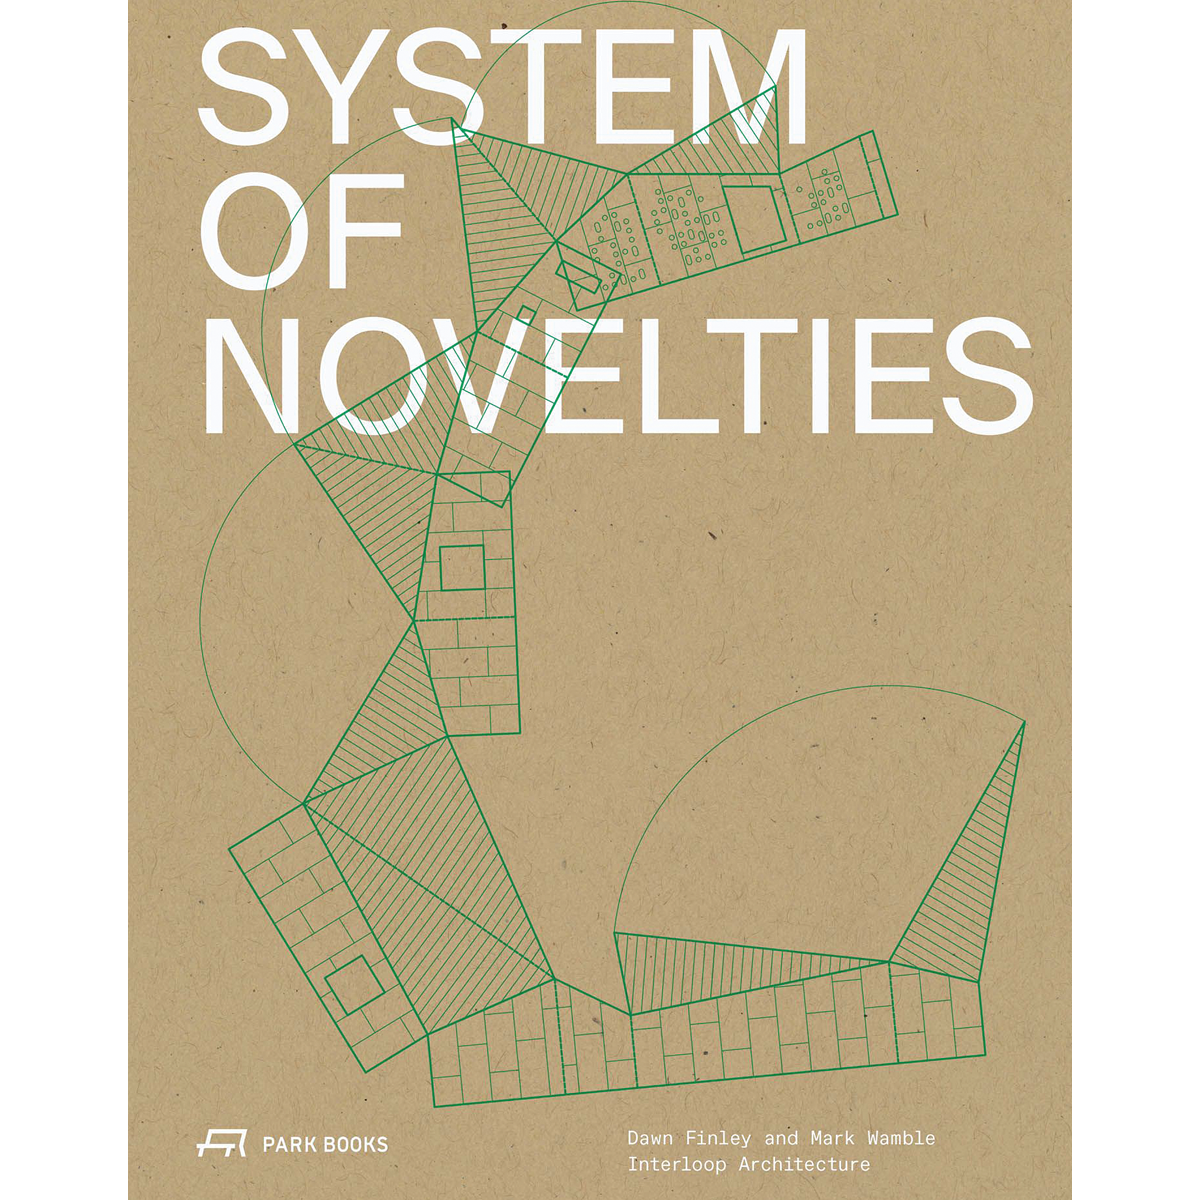 System of Novelties